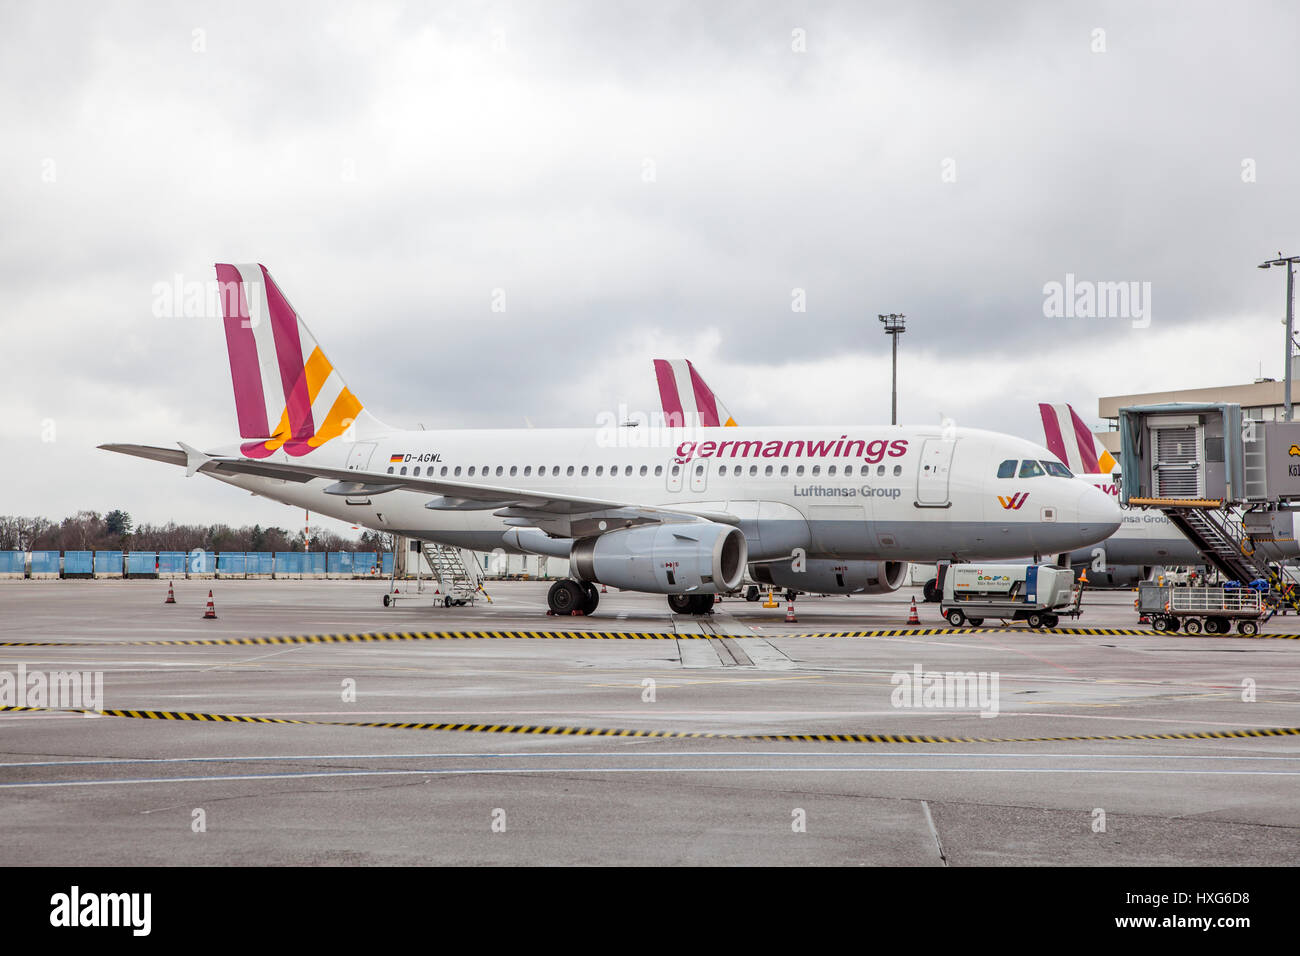 COLOGNE, ALLEMAGNE - 9 mars 2017 : Airbus A319-100 GermanWings, la porte de l'aéroport de Cologne, Allemagne Banque D'Images